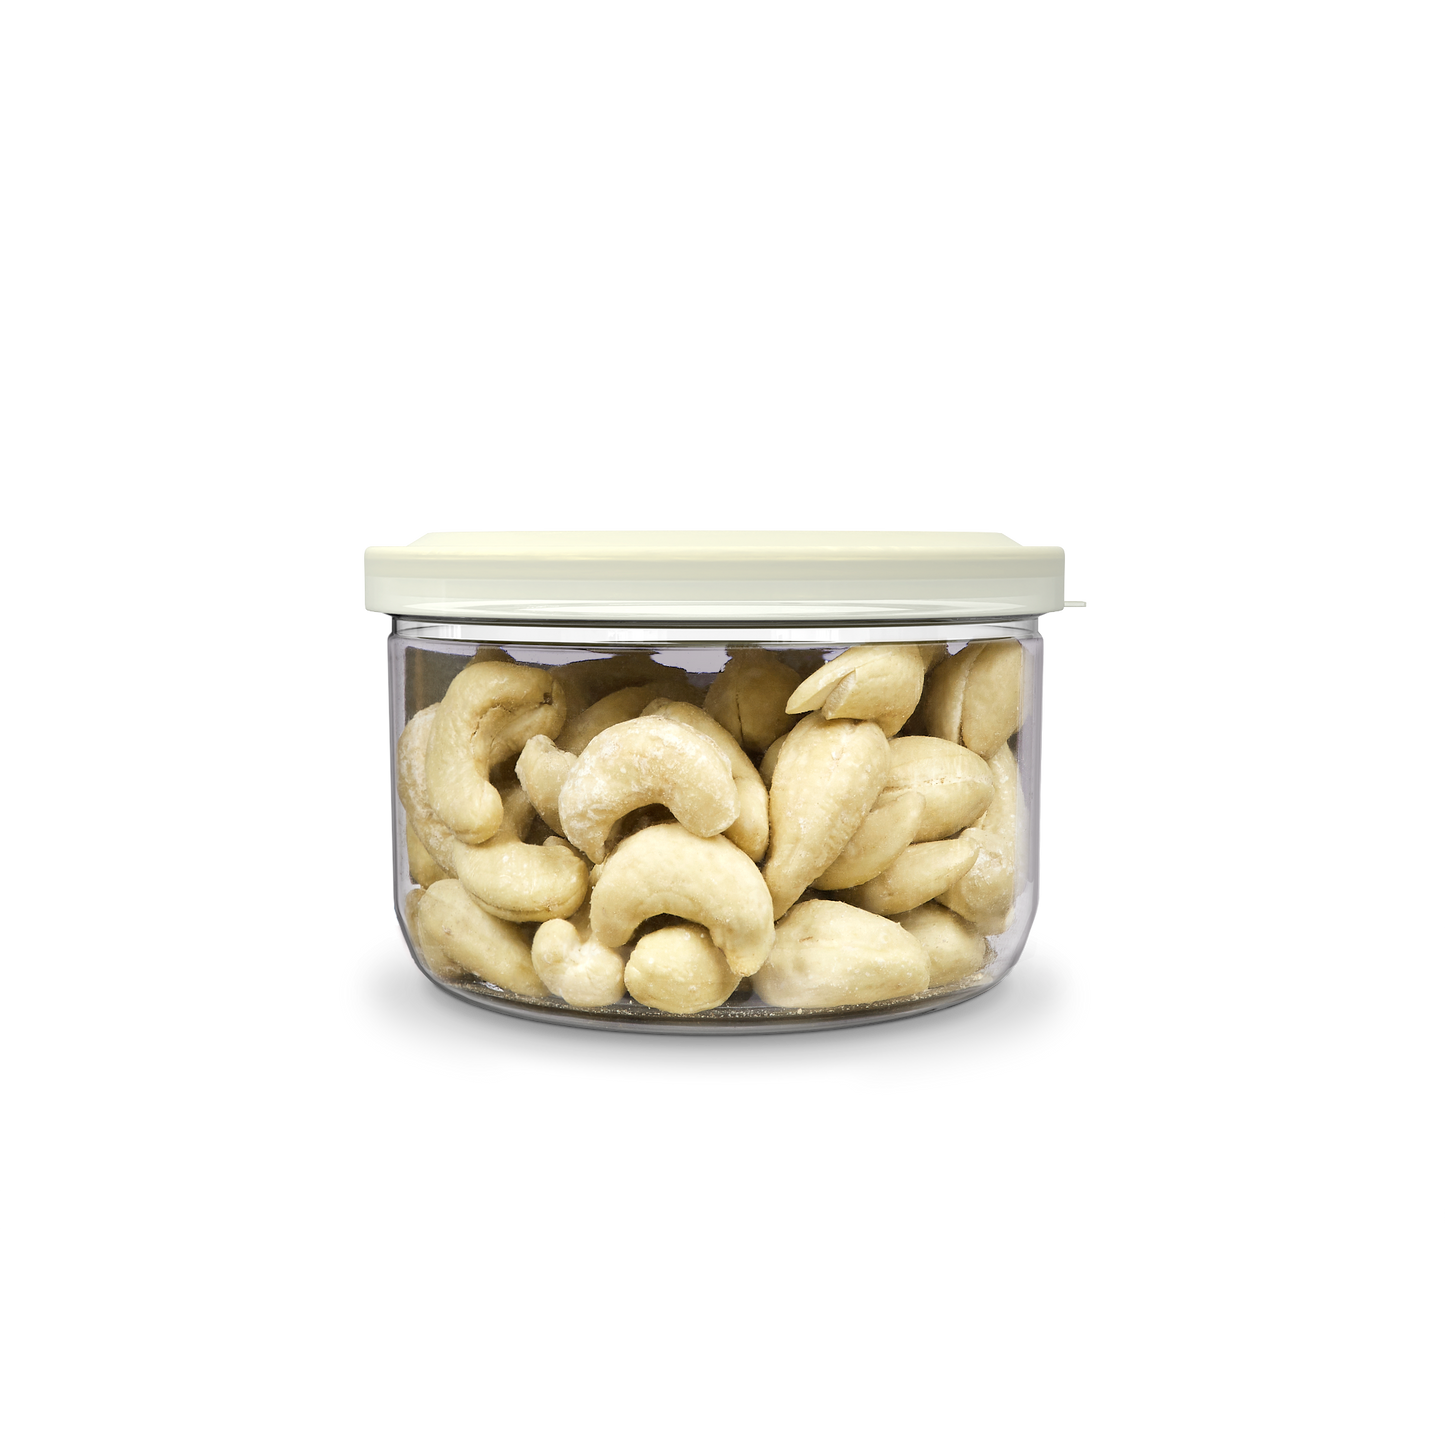 SAO Foods Salted Roasted Cashews 100 gm | Tin Cap PET Jar